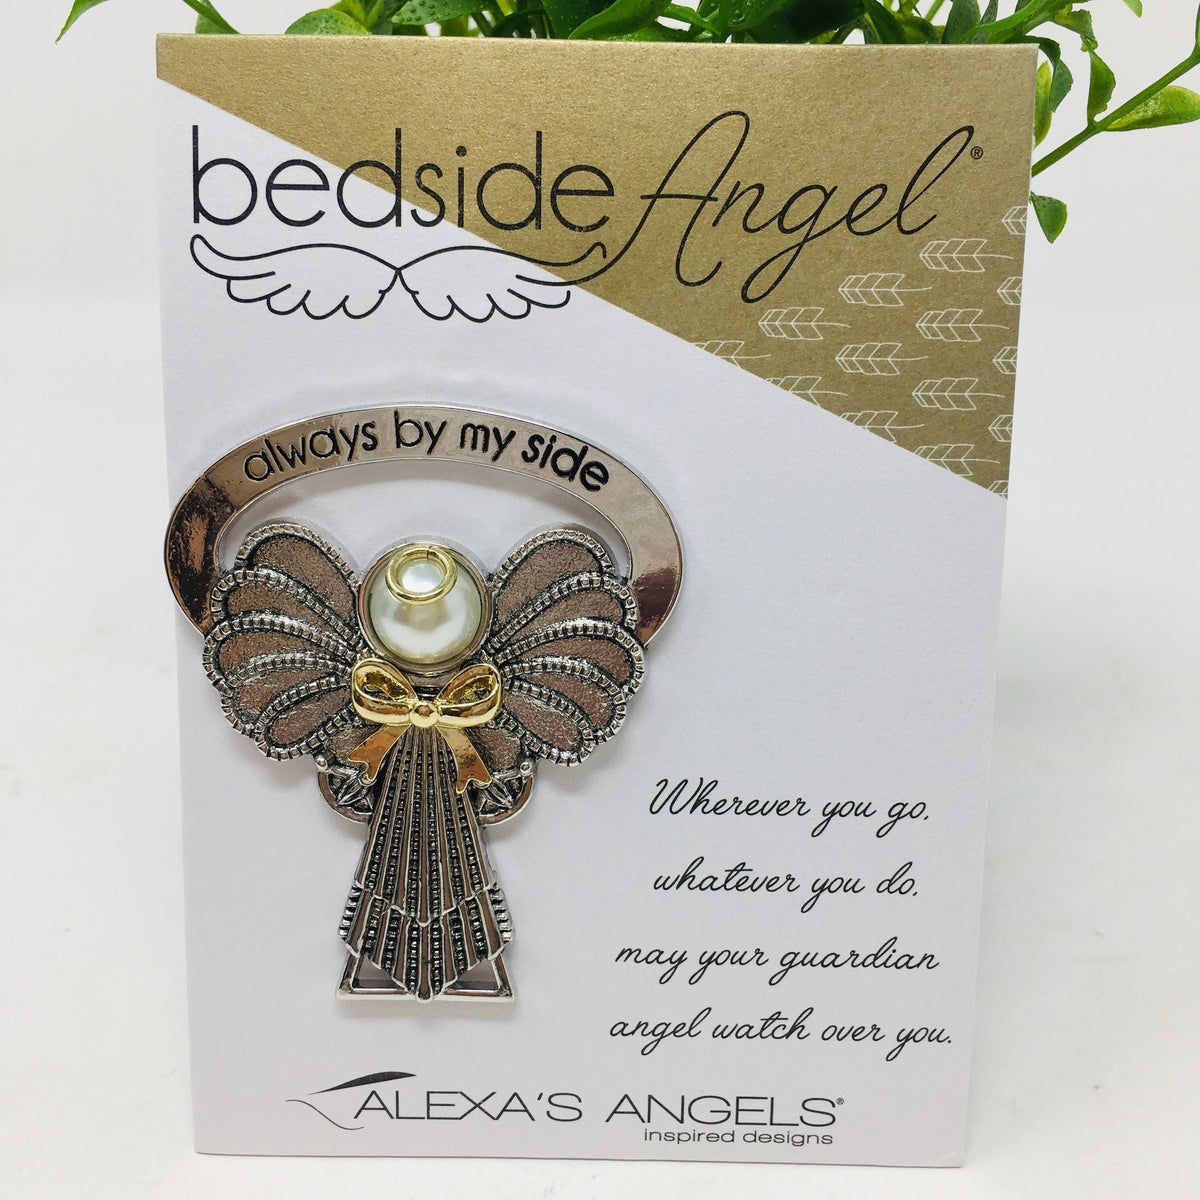 Bedside Angel